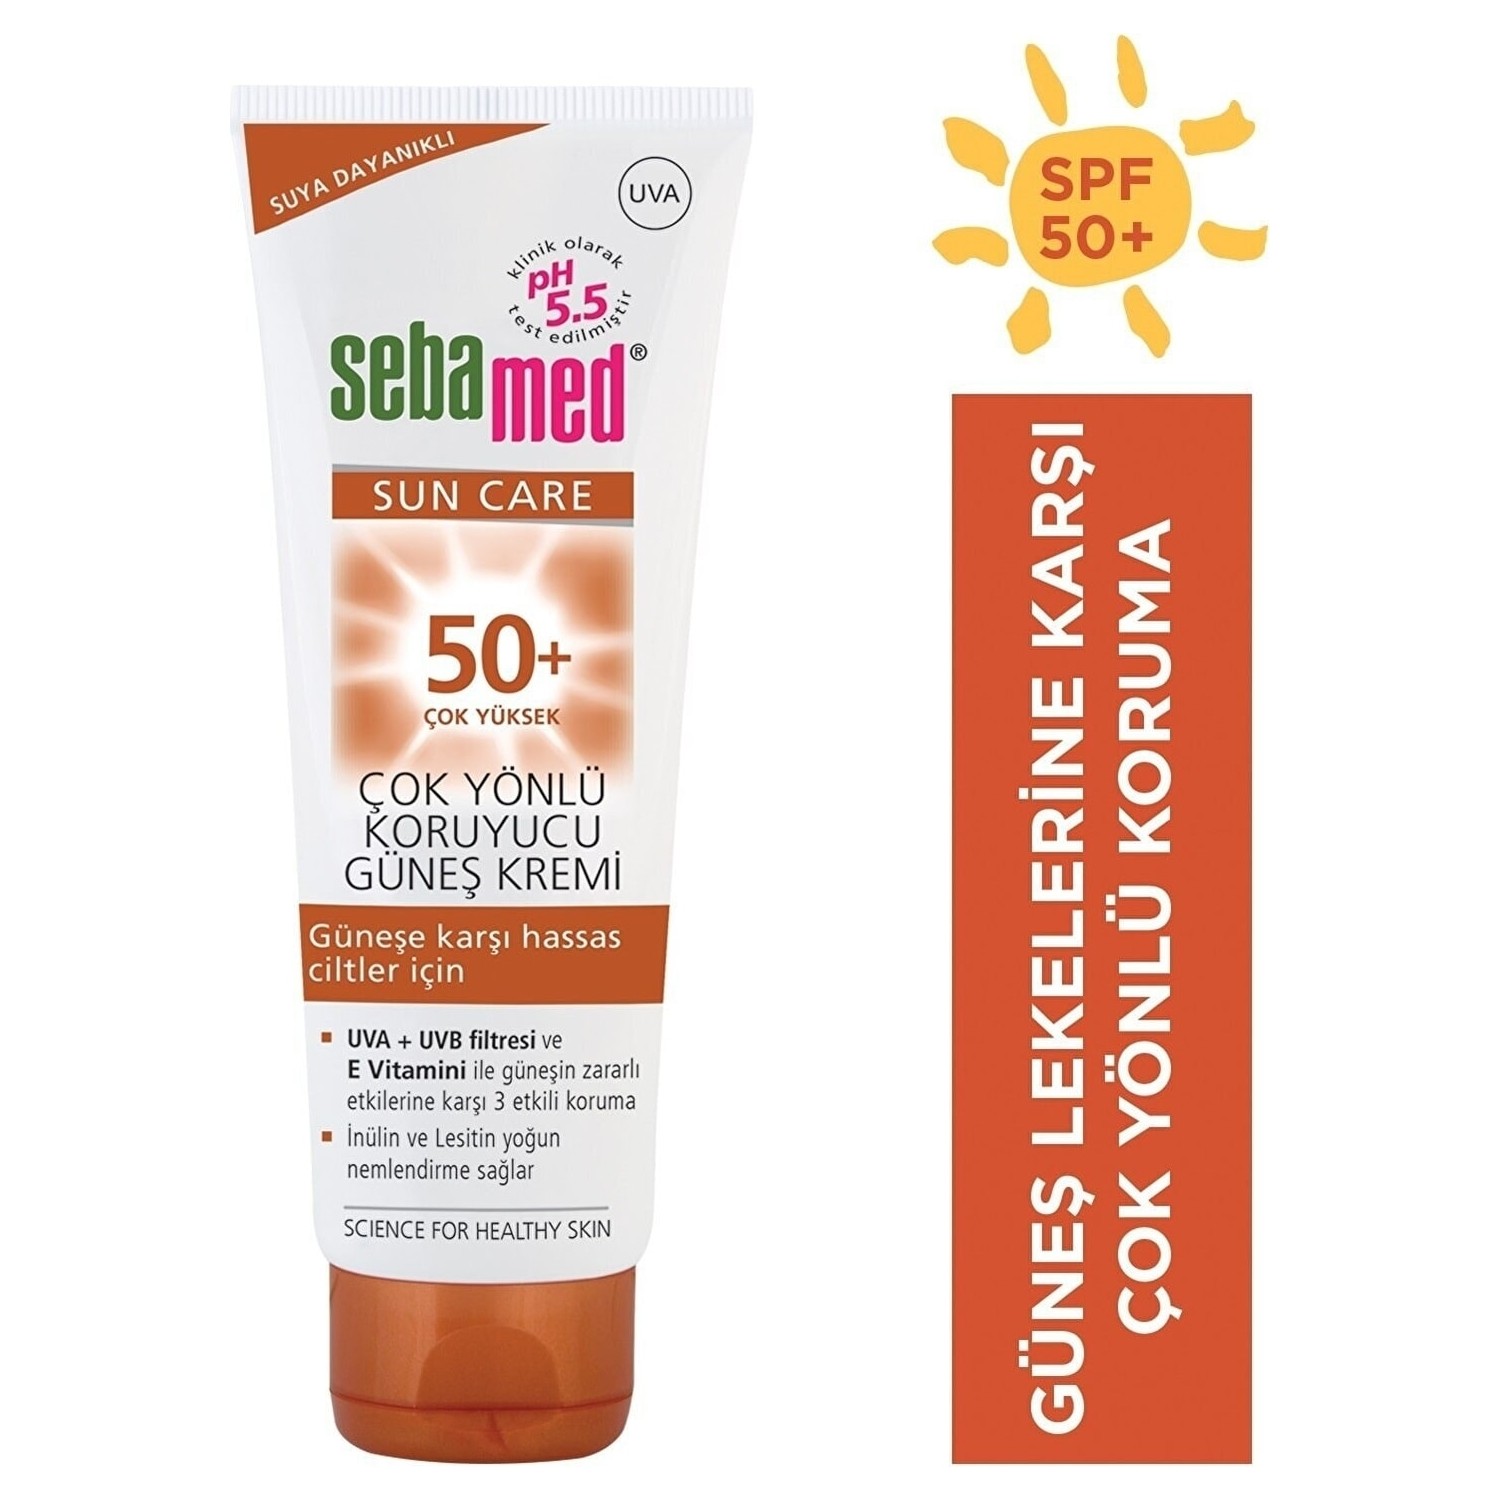 Солнцезащитный крем Sebamed Sun SPF 50, 50 мл солнцезащитный крем для тела spf 50 sun time sunscreen spray 150 мл